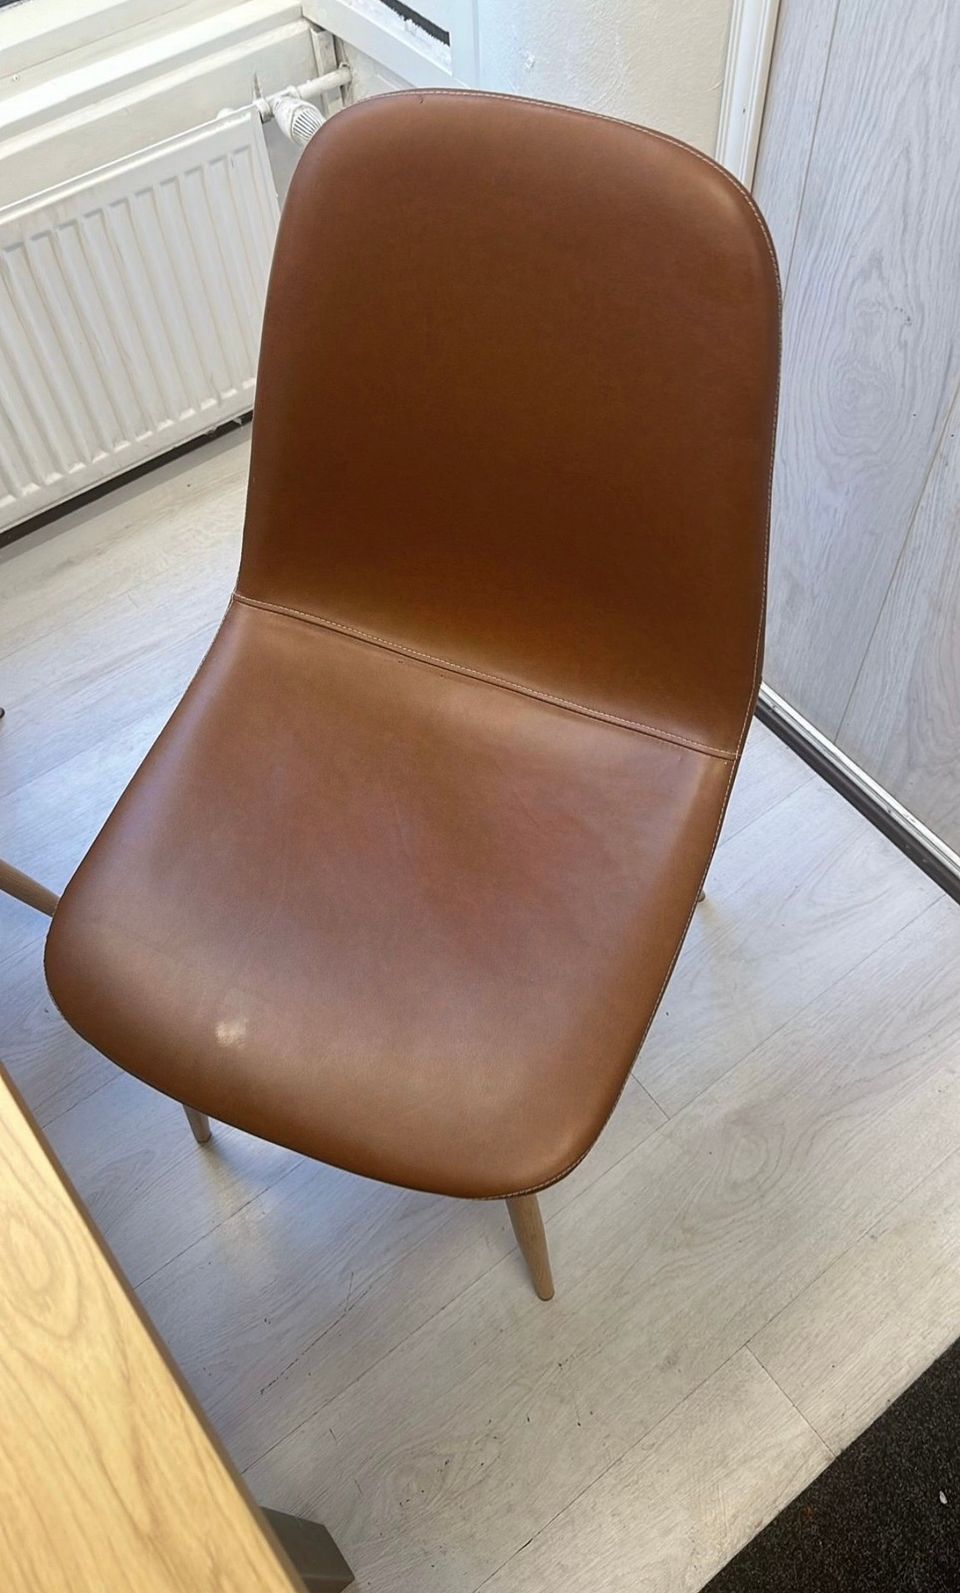 Myydään 2 kpl uusia Jysk keinonahka tuoleja 25€/kpl myydään yhdessä 50€